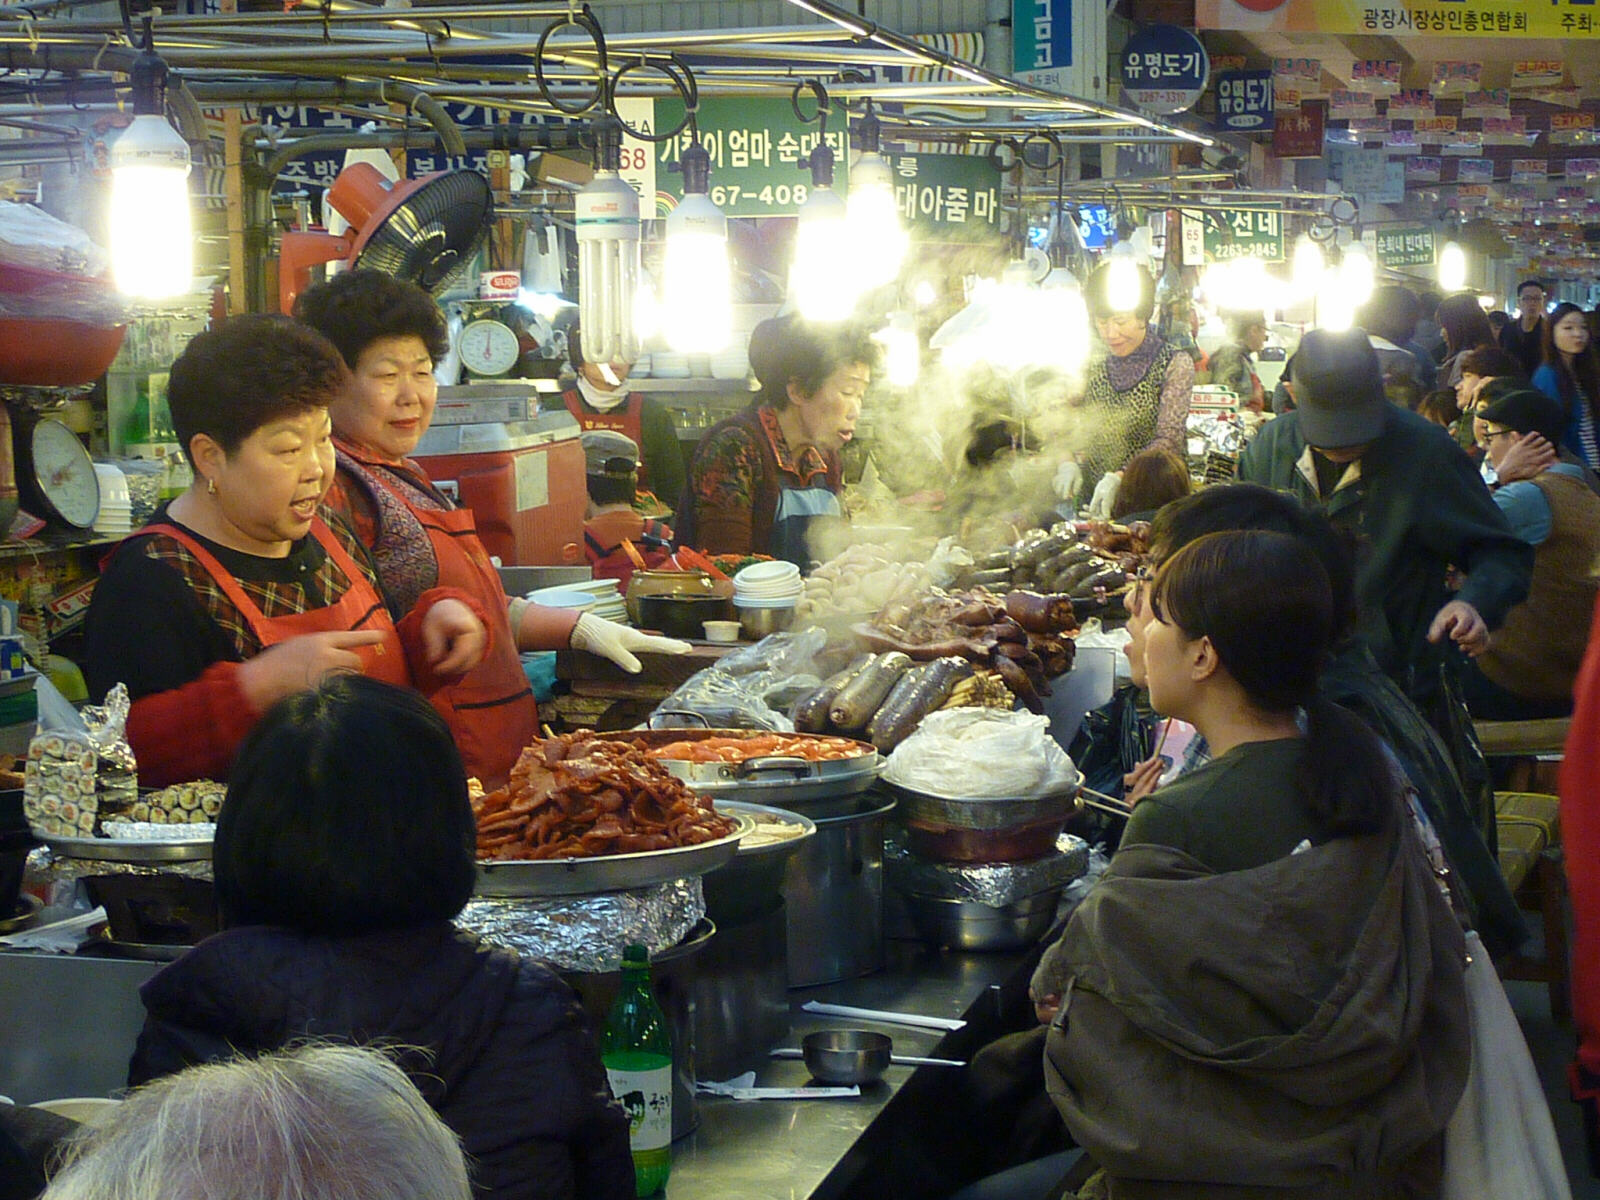 Dongdaemun food market in Seoul, South Korea